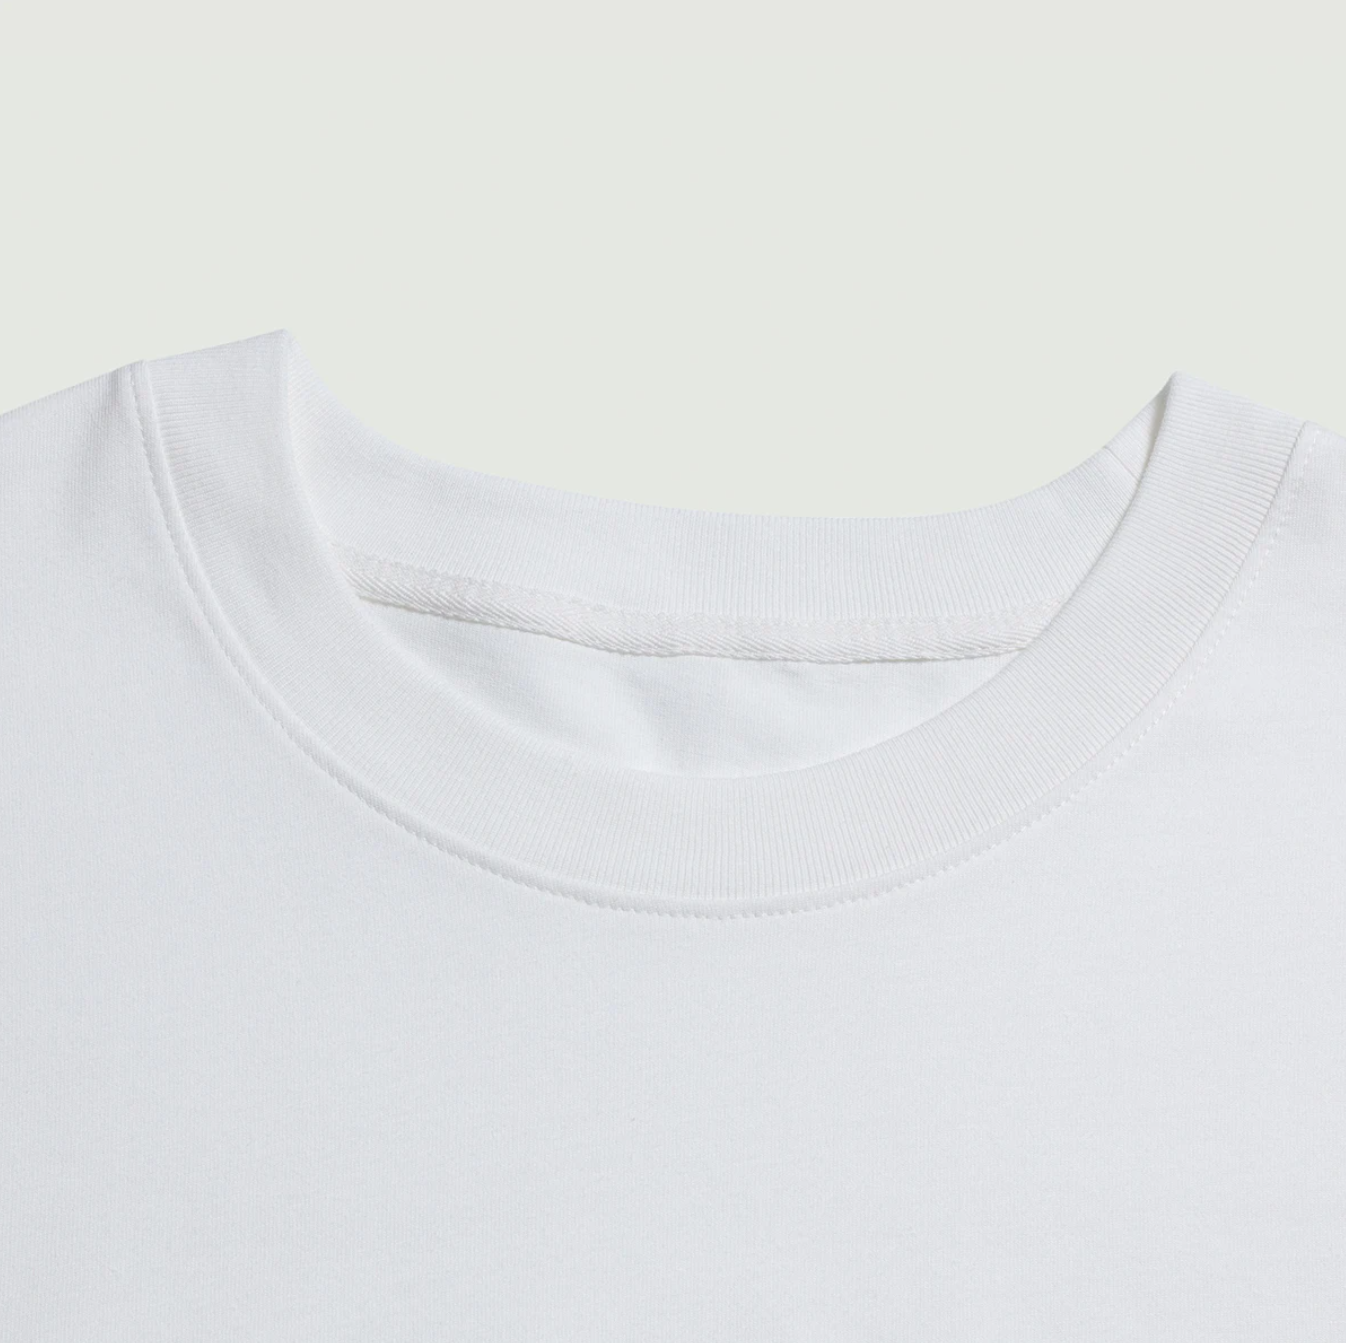 Garment fabric neck line close up